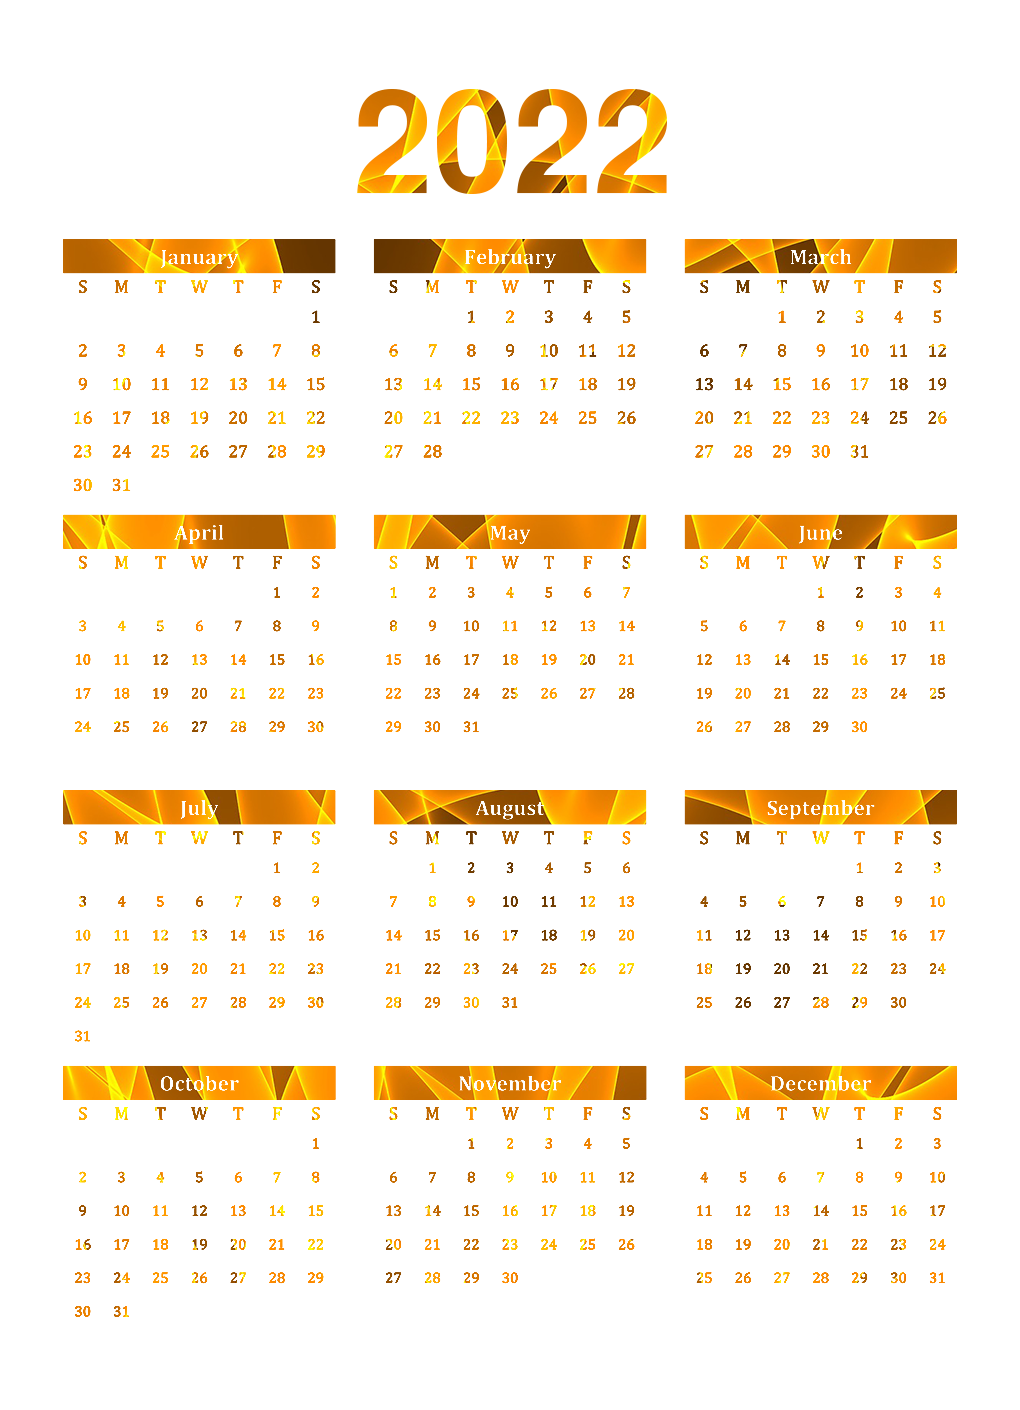 Vector Calendar 2022 PNG Clipart